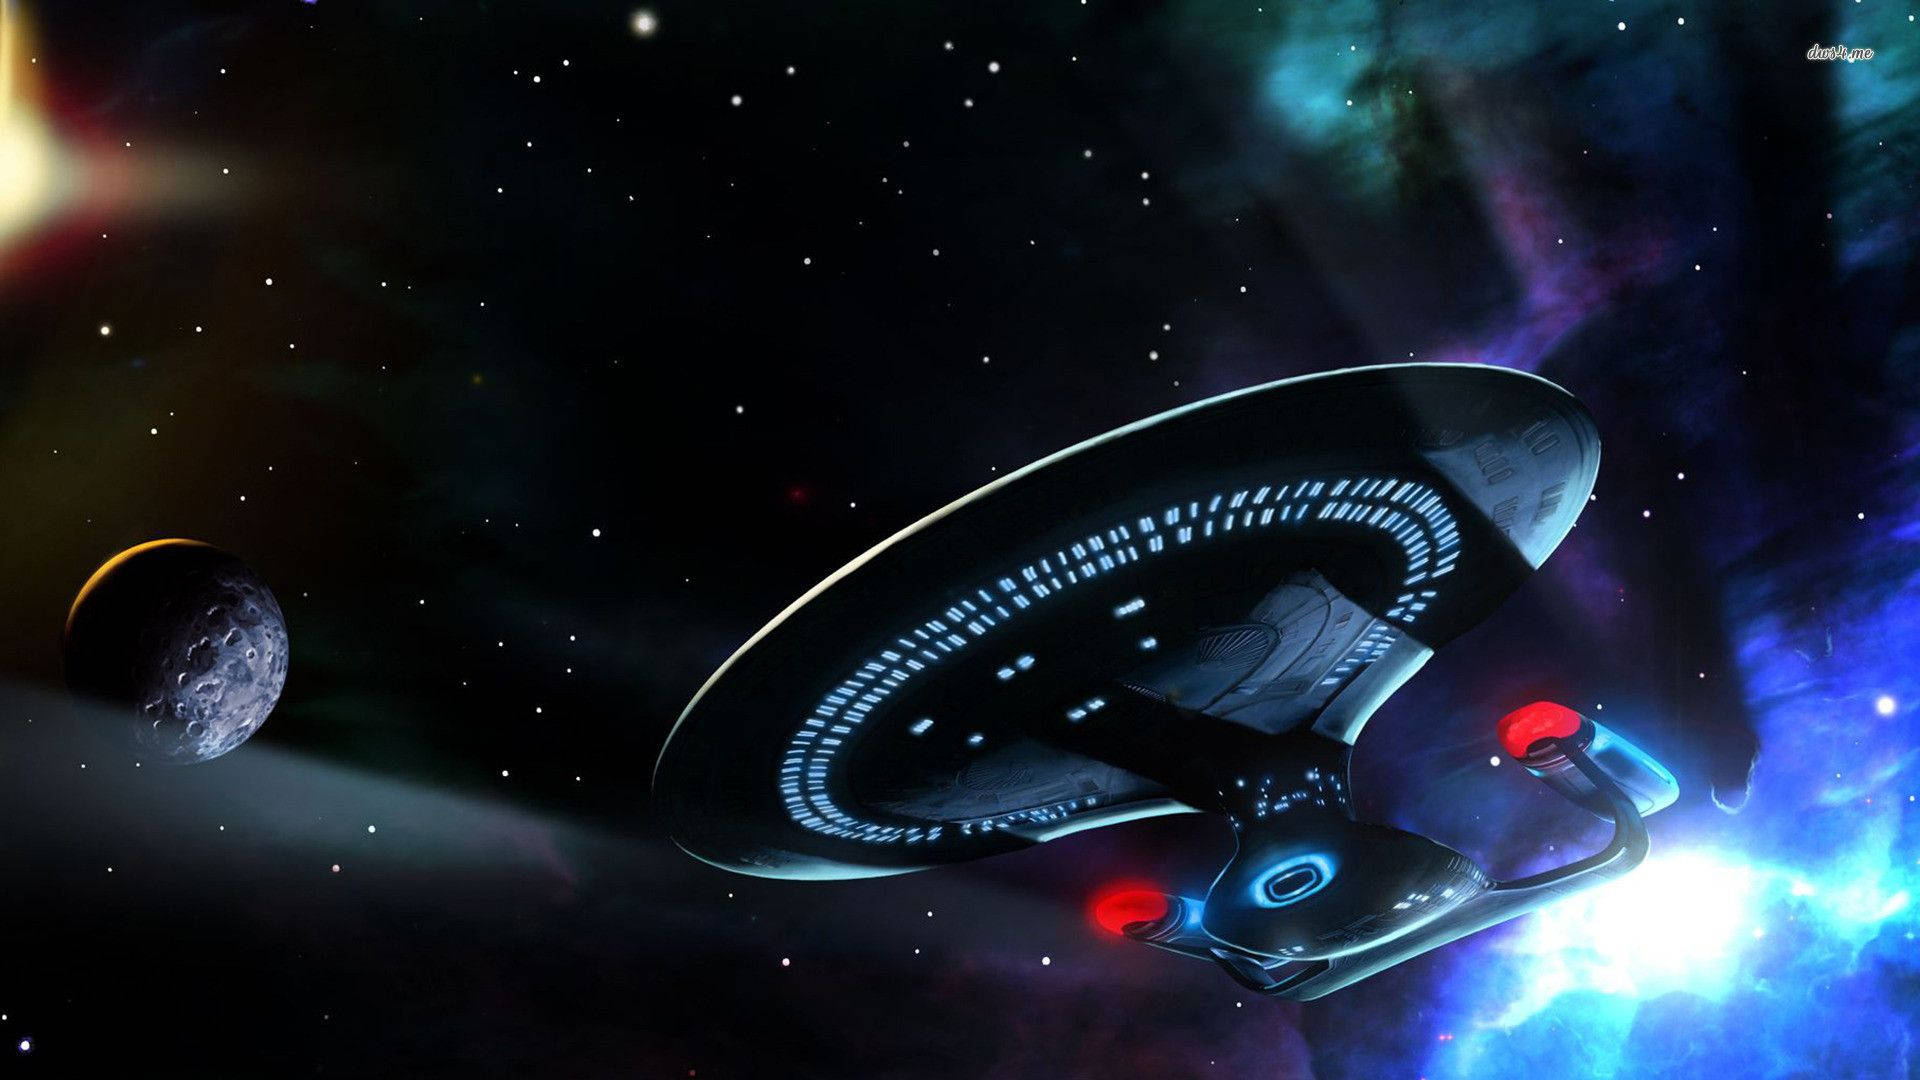 Uss Enterprise Of Star Trek Background